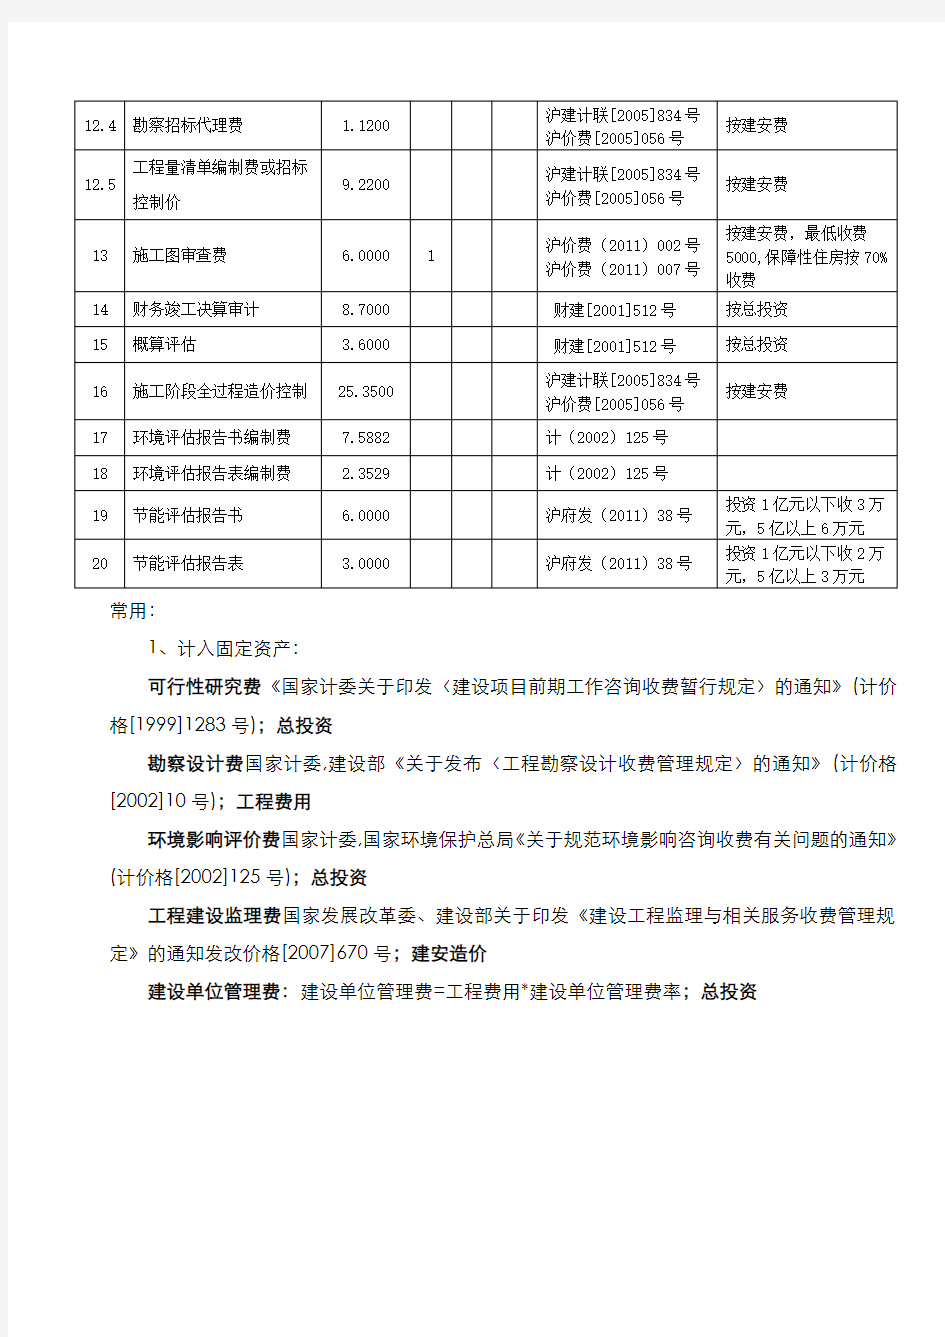 二类费用-工程建设其他费用取费标准集合(上海市-2012年版)